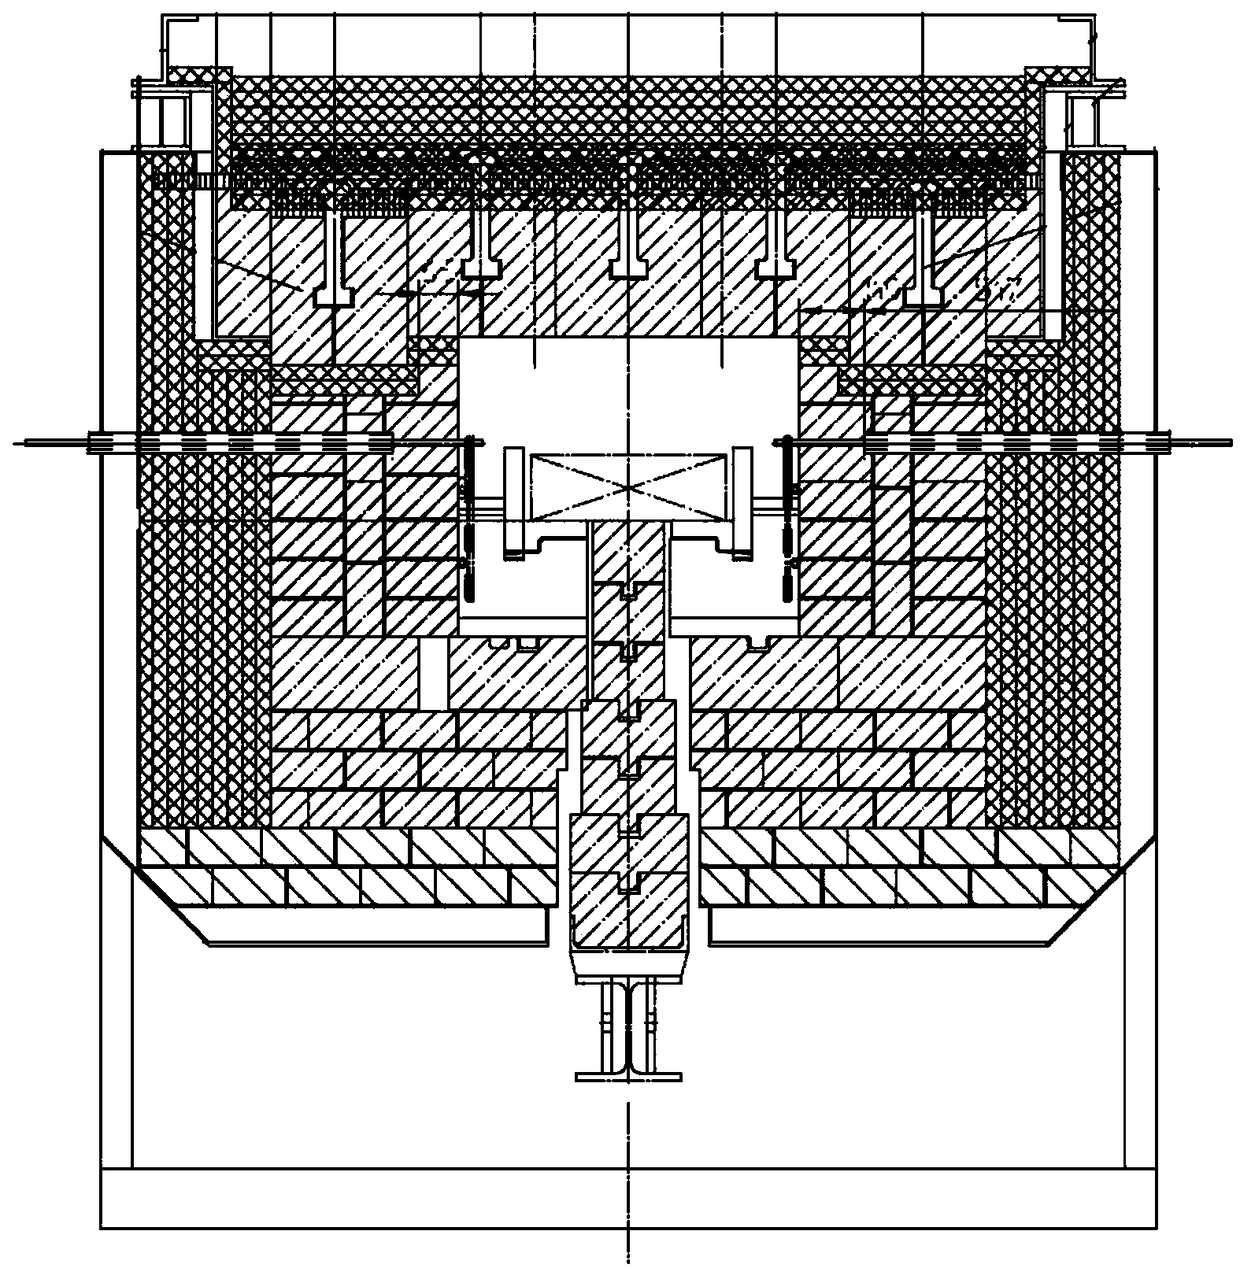 Stepping beam type sintering furnace